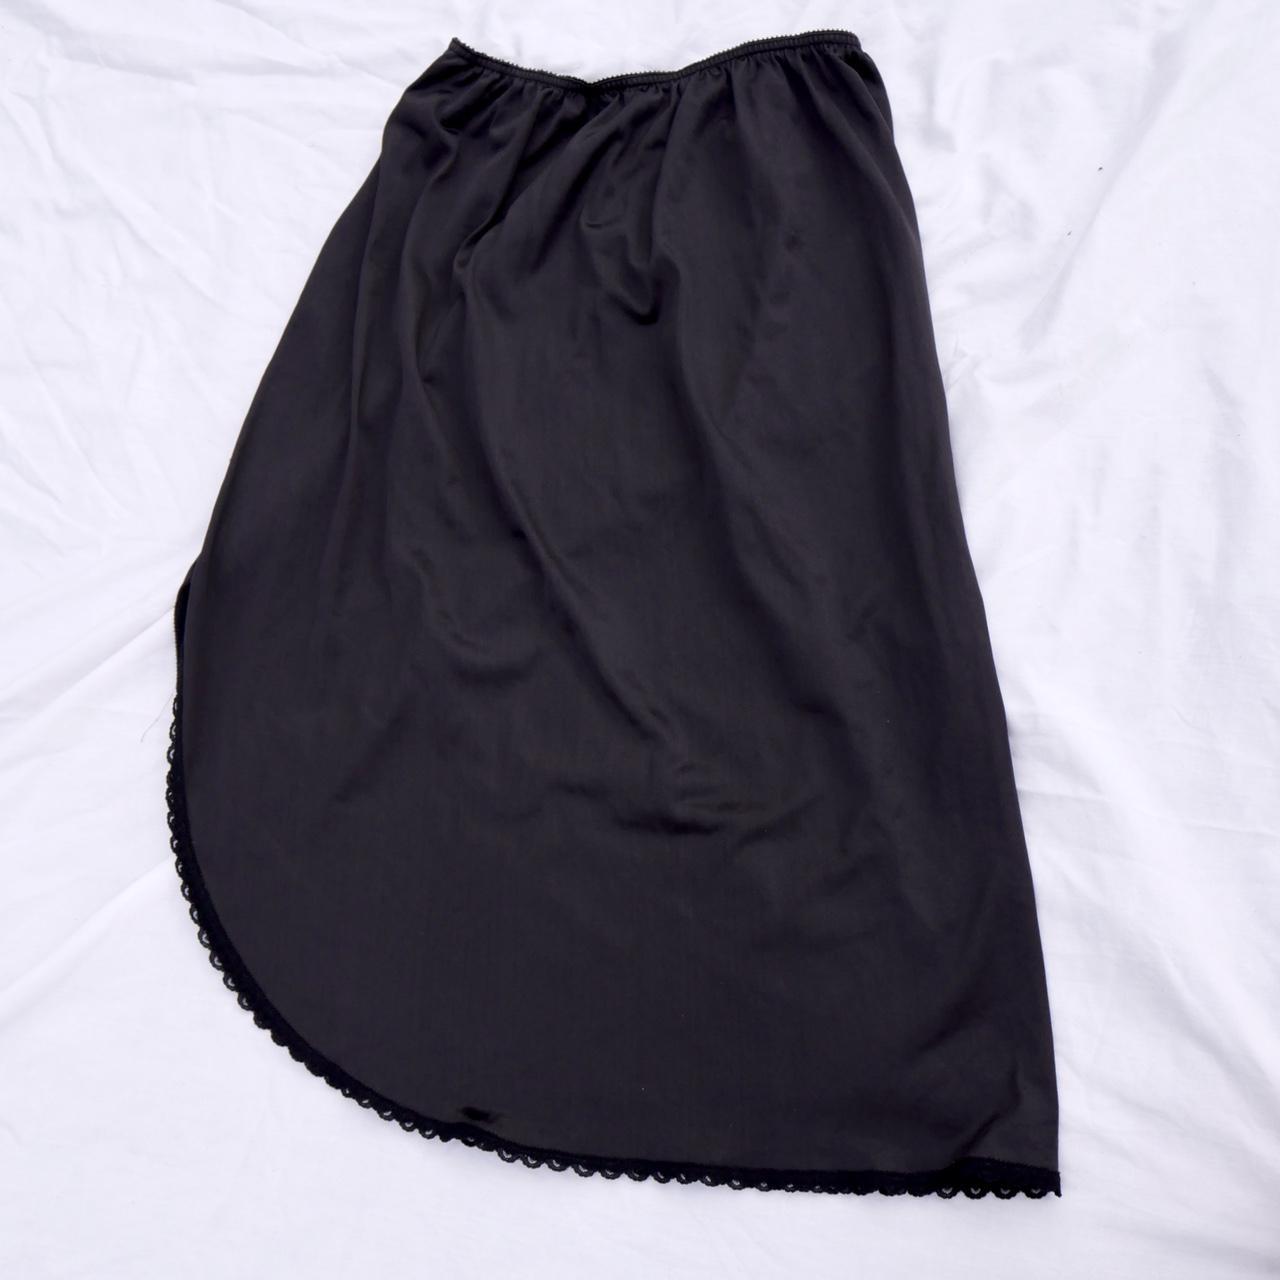 Sears Women's Black Skirt (2)